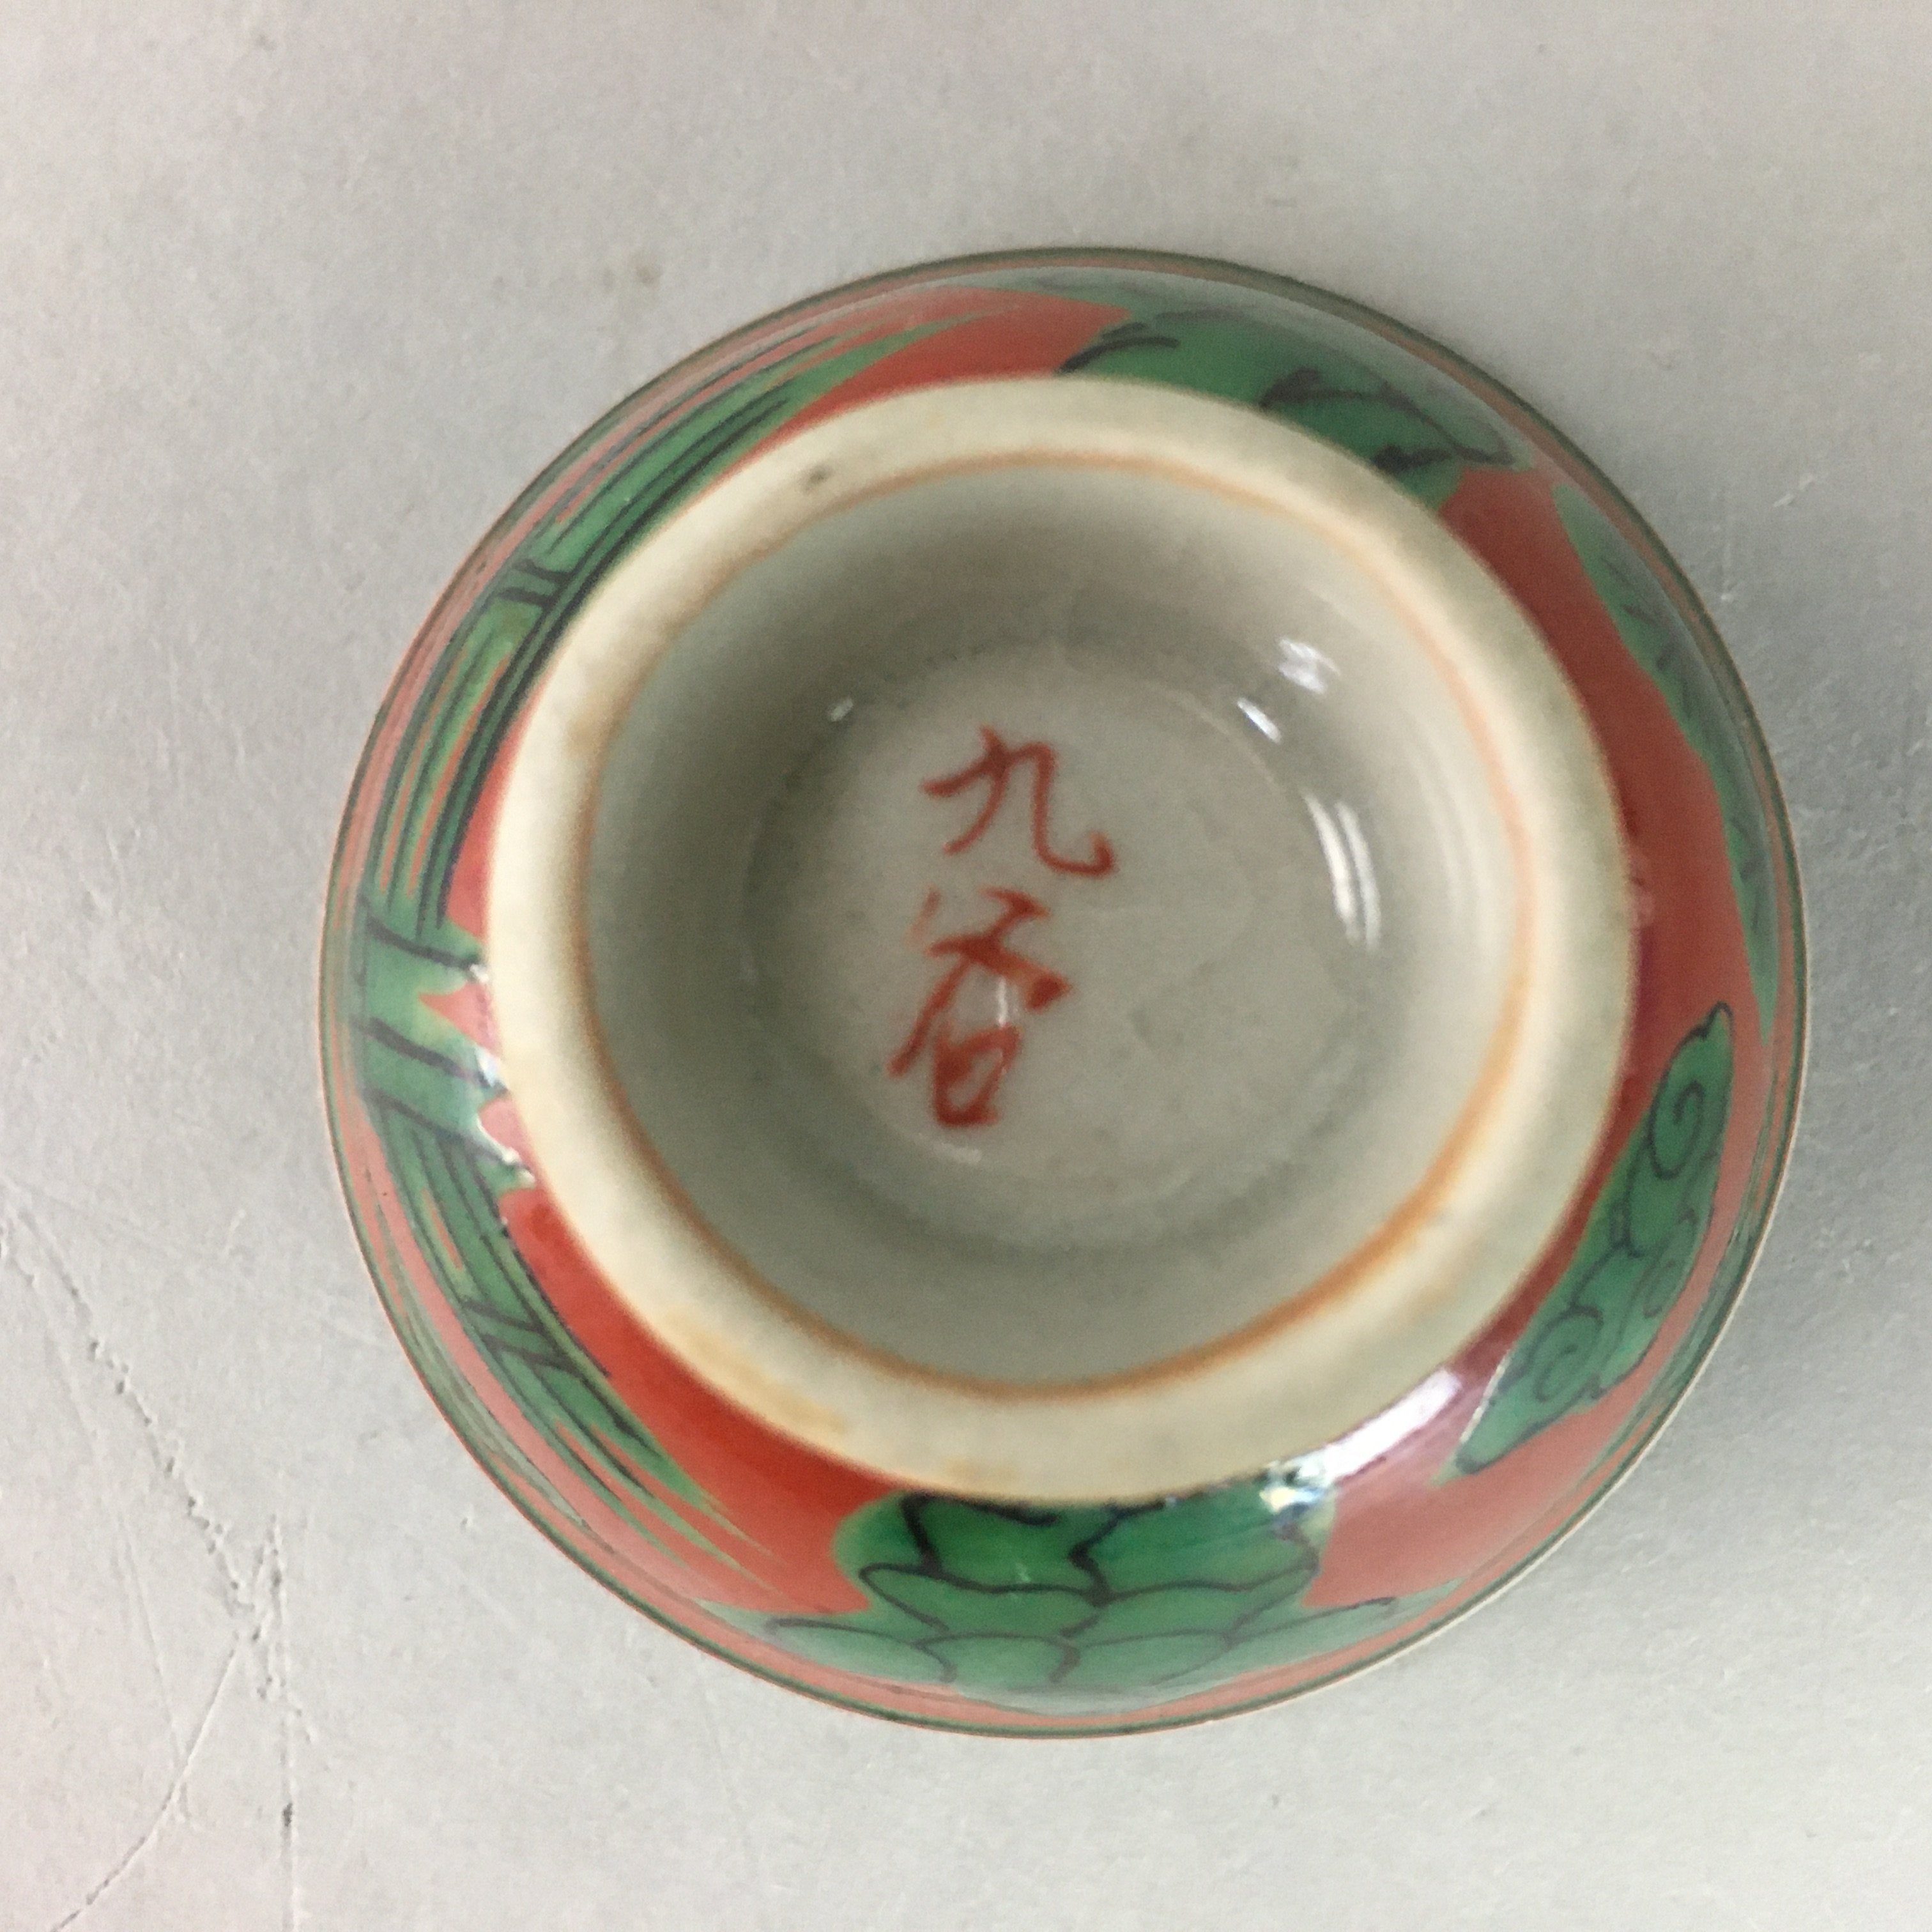 Japanese Ceramic Sake Cup Guinomi Sakazuki Kutani Vtg Pottery Red Green GU660